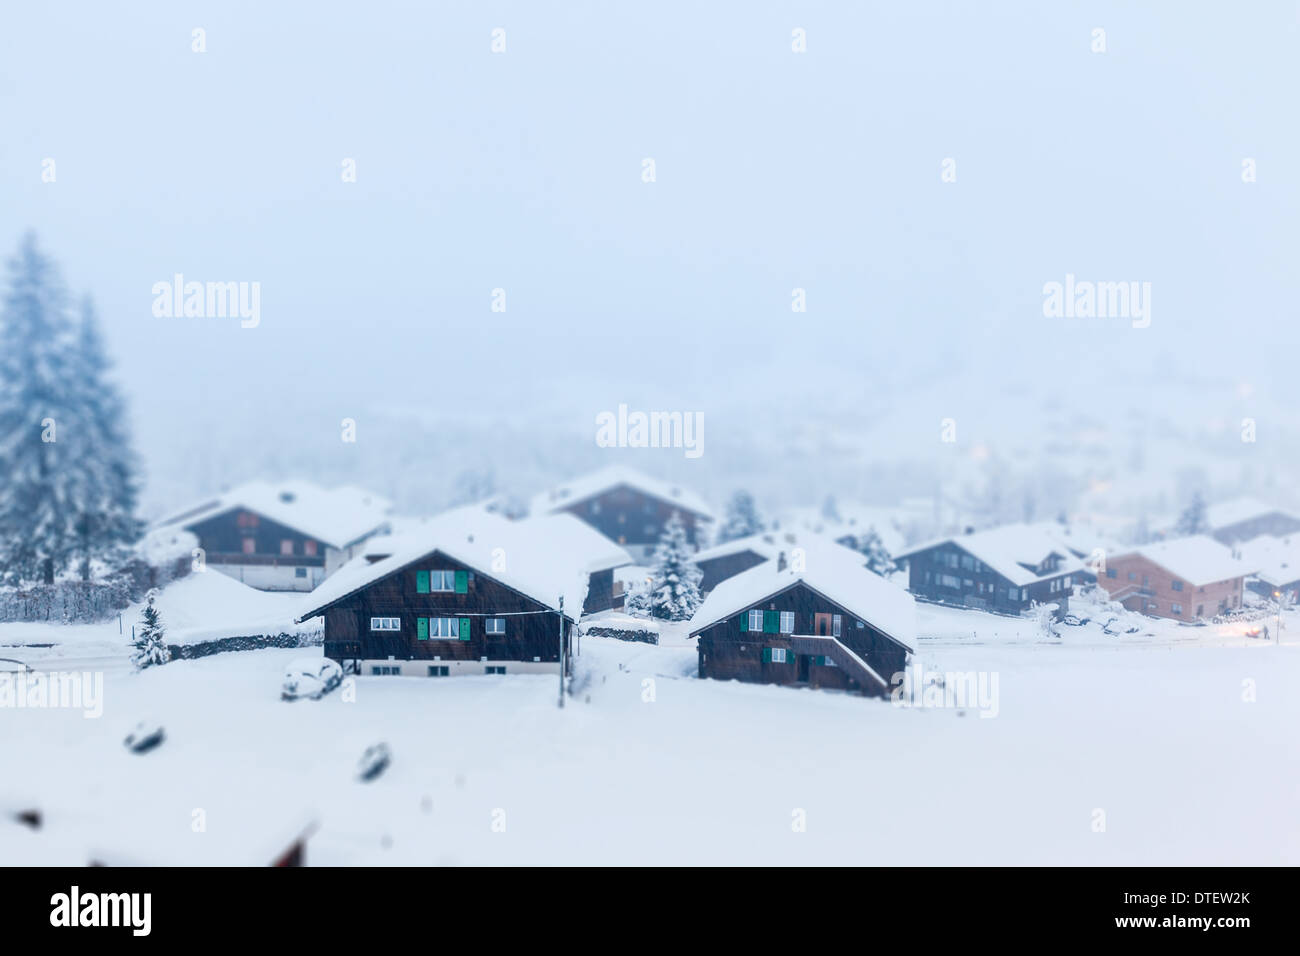 Maisons en bois traditionnelles à Grindelwald, Suisse lors de fortes chutes de neige. Banque D'Images